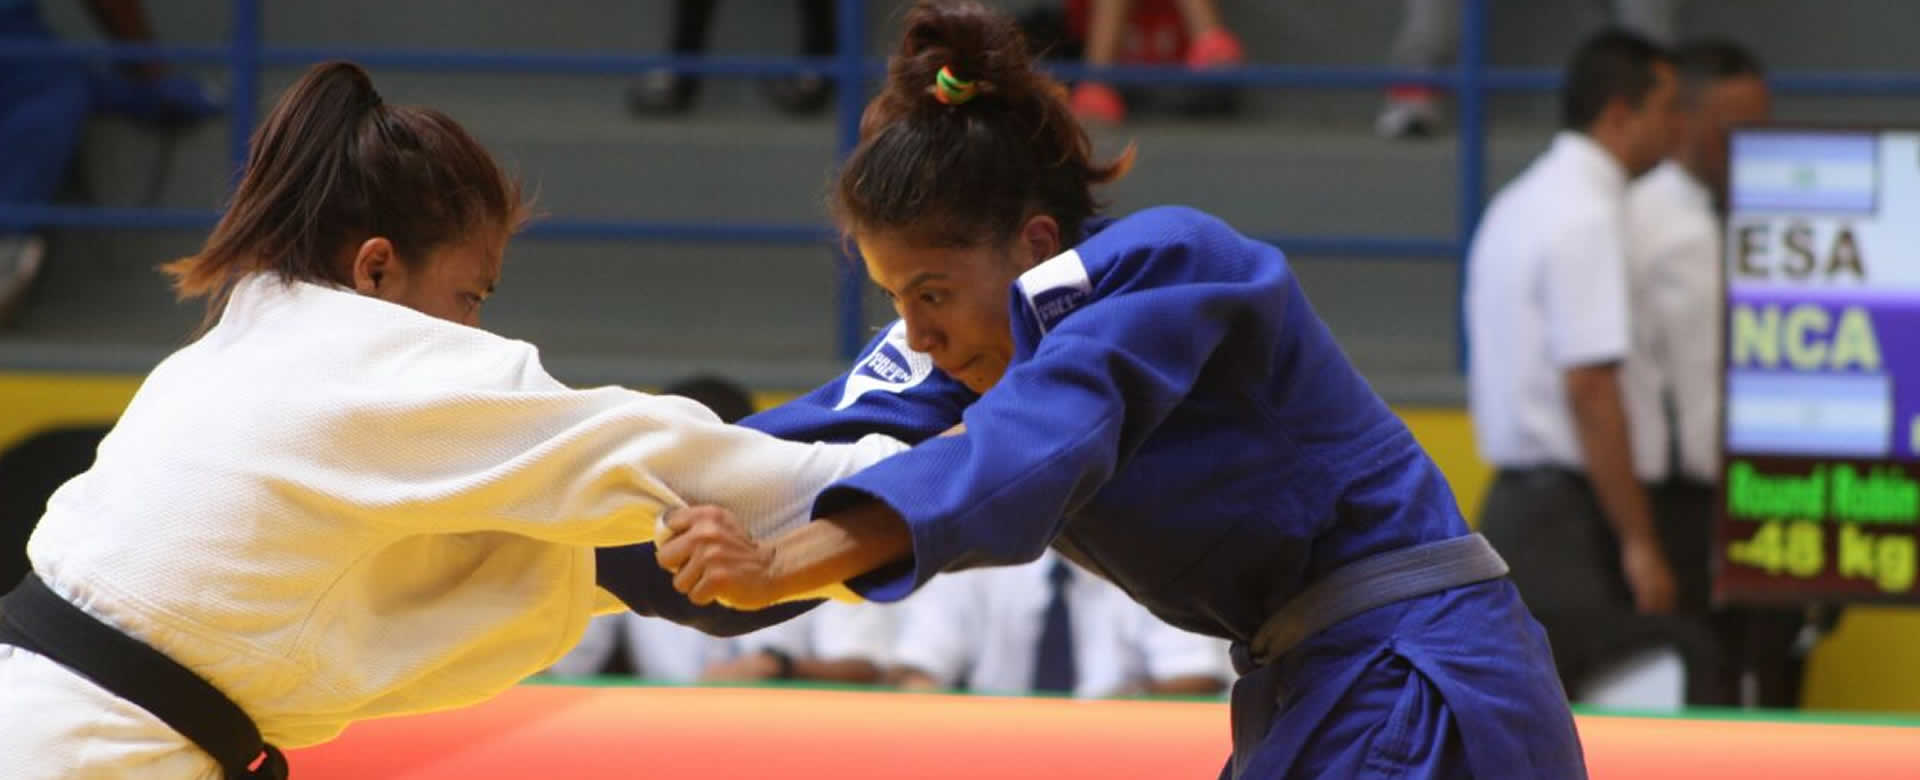 Keyling Ruiz consigue su primera victoria en Judo